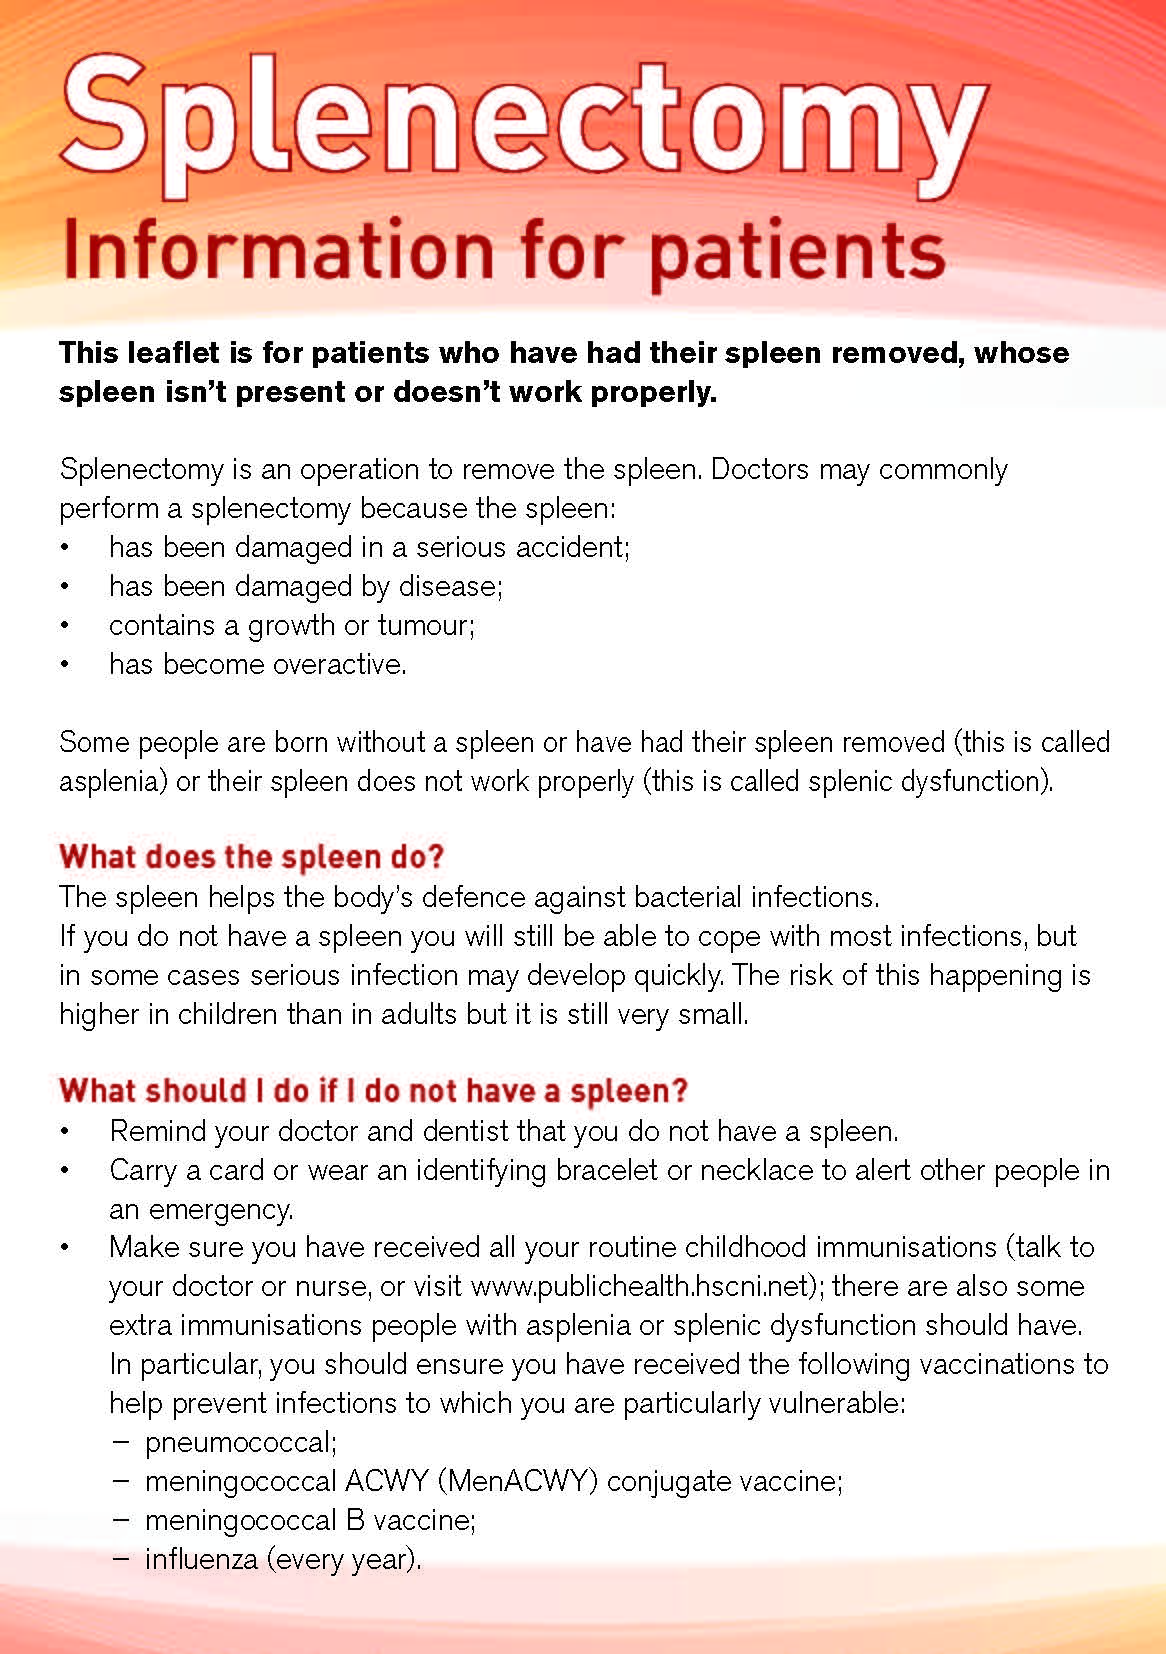 Splenectomy patient factsheet image